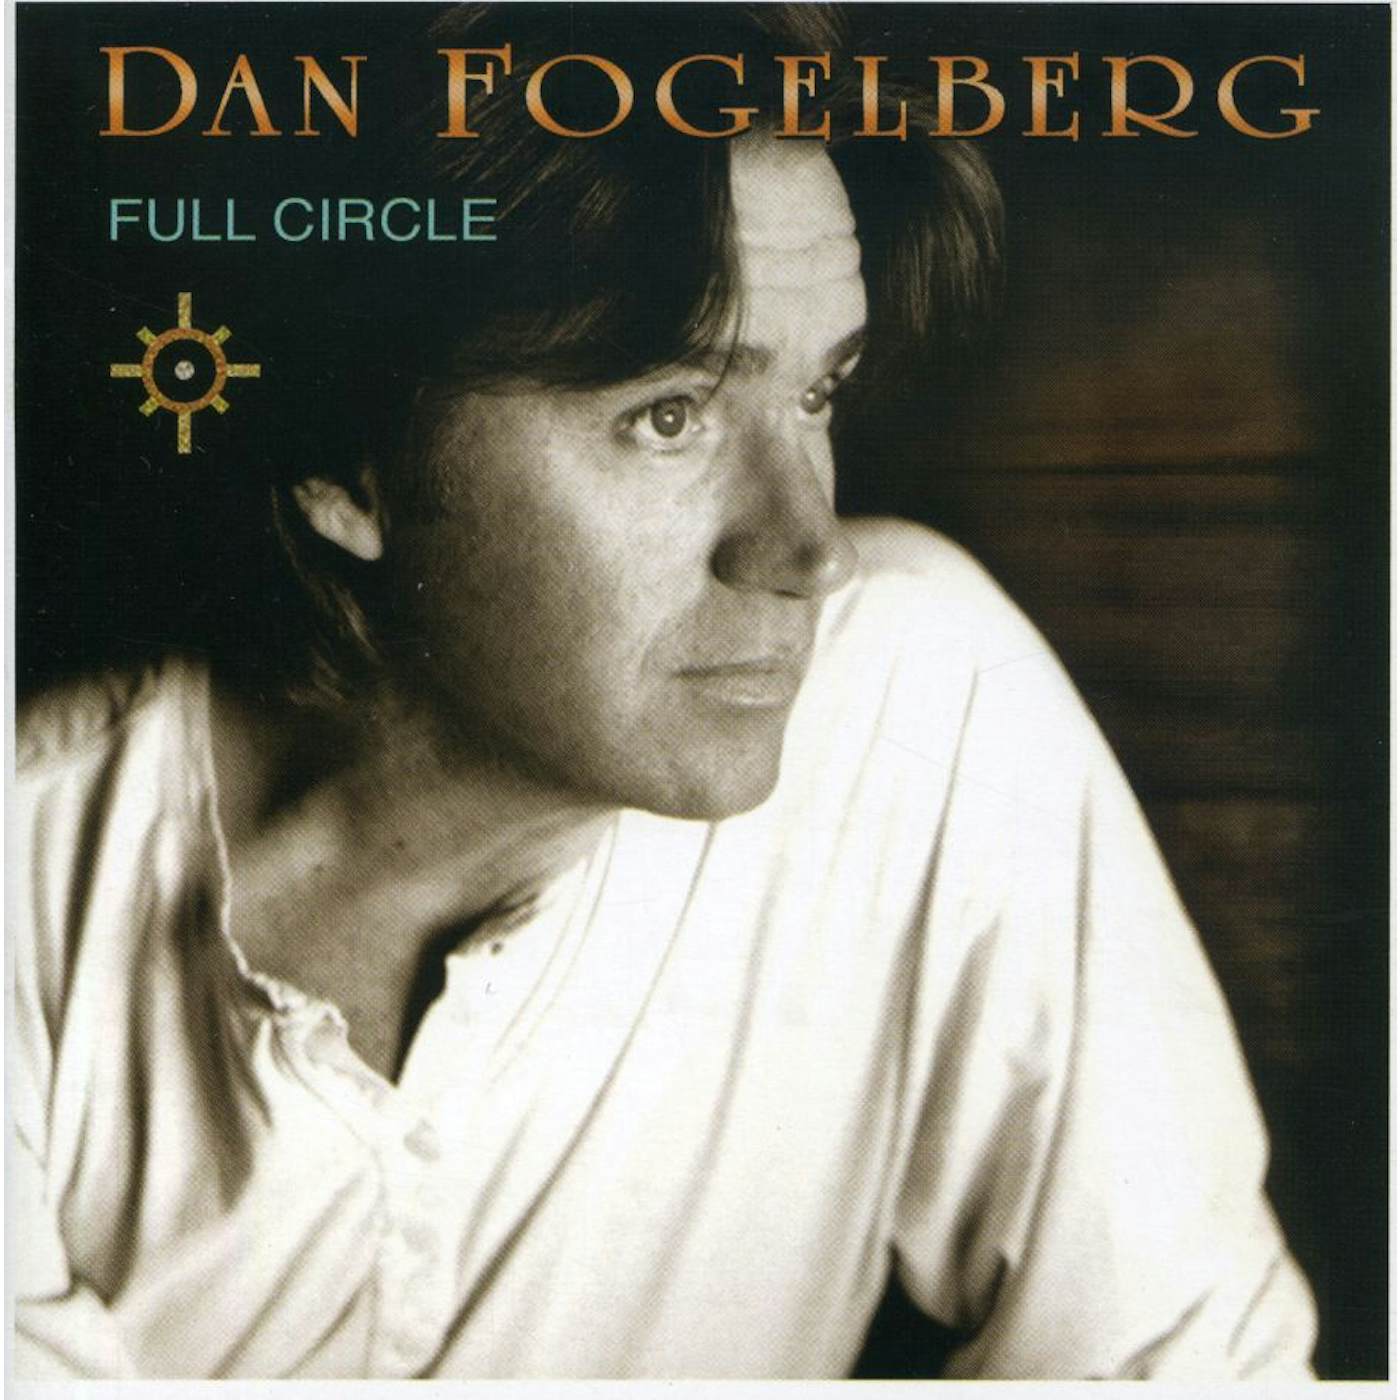 Dan Fogelberg FULL CIRCLE CD